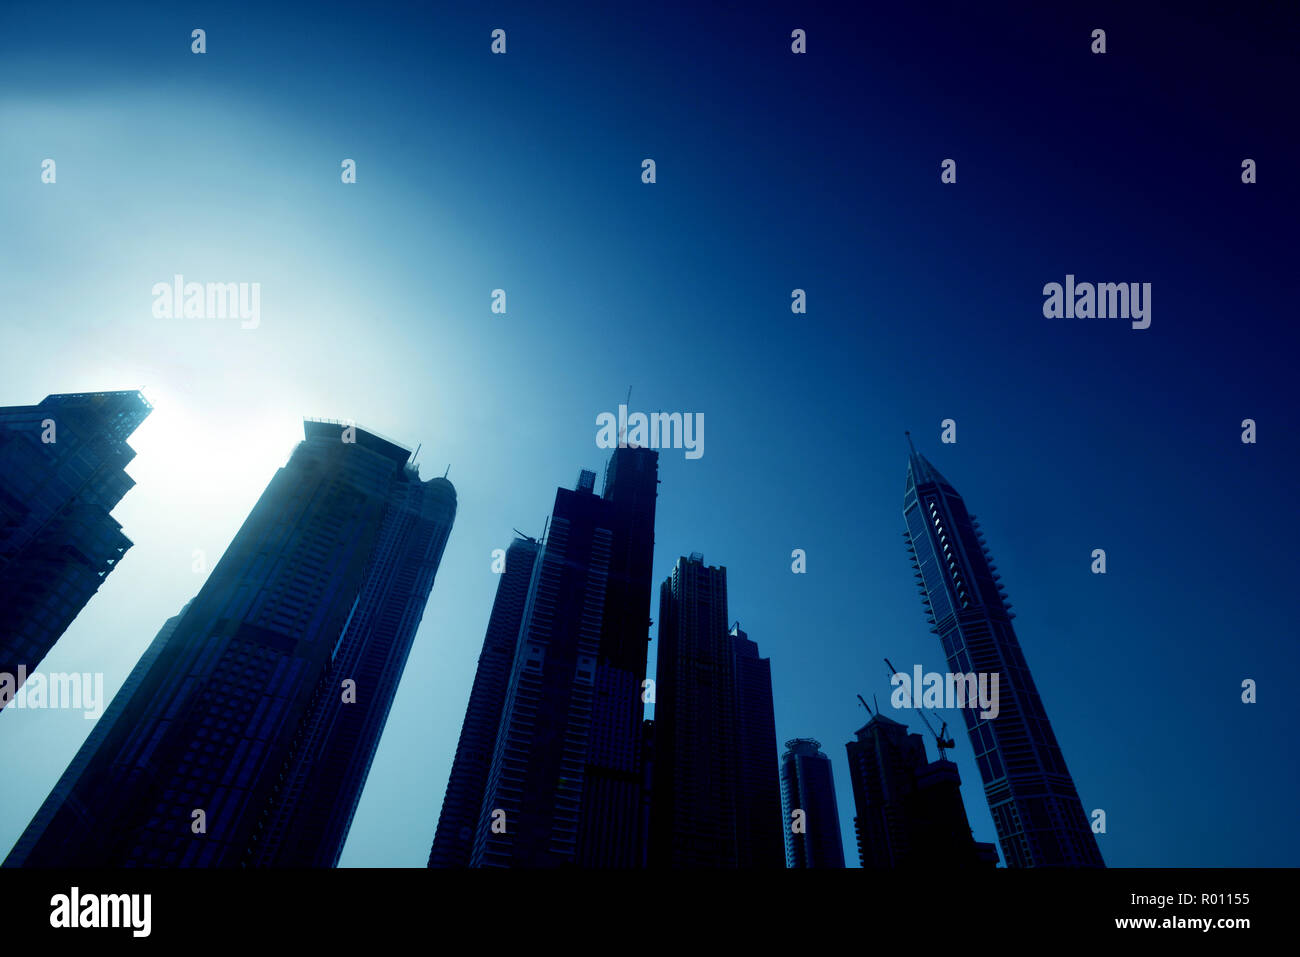 Vereinigte Arabische Emirate, Dubai, erhöhten Blick auf die neue Skyline von Dubai, der modernen Architektur und Sky scrappers Silhouetten auf dunkelblauem Hintergrund Stockfoto